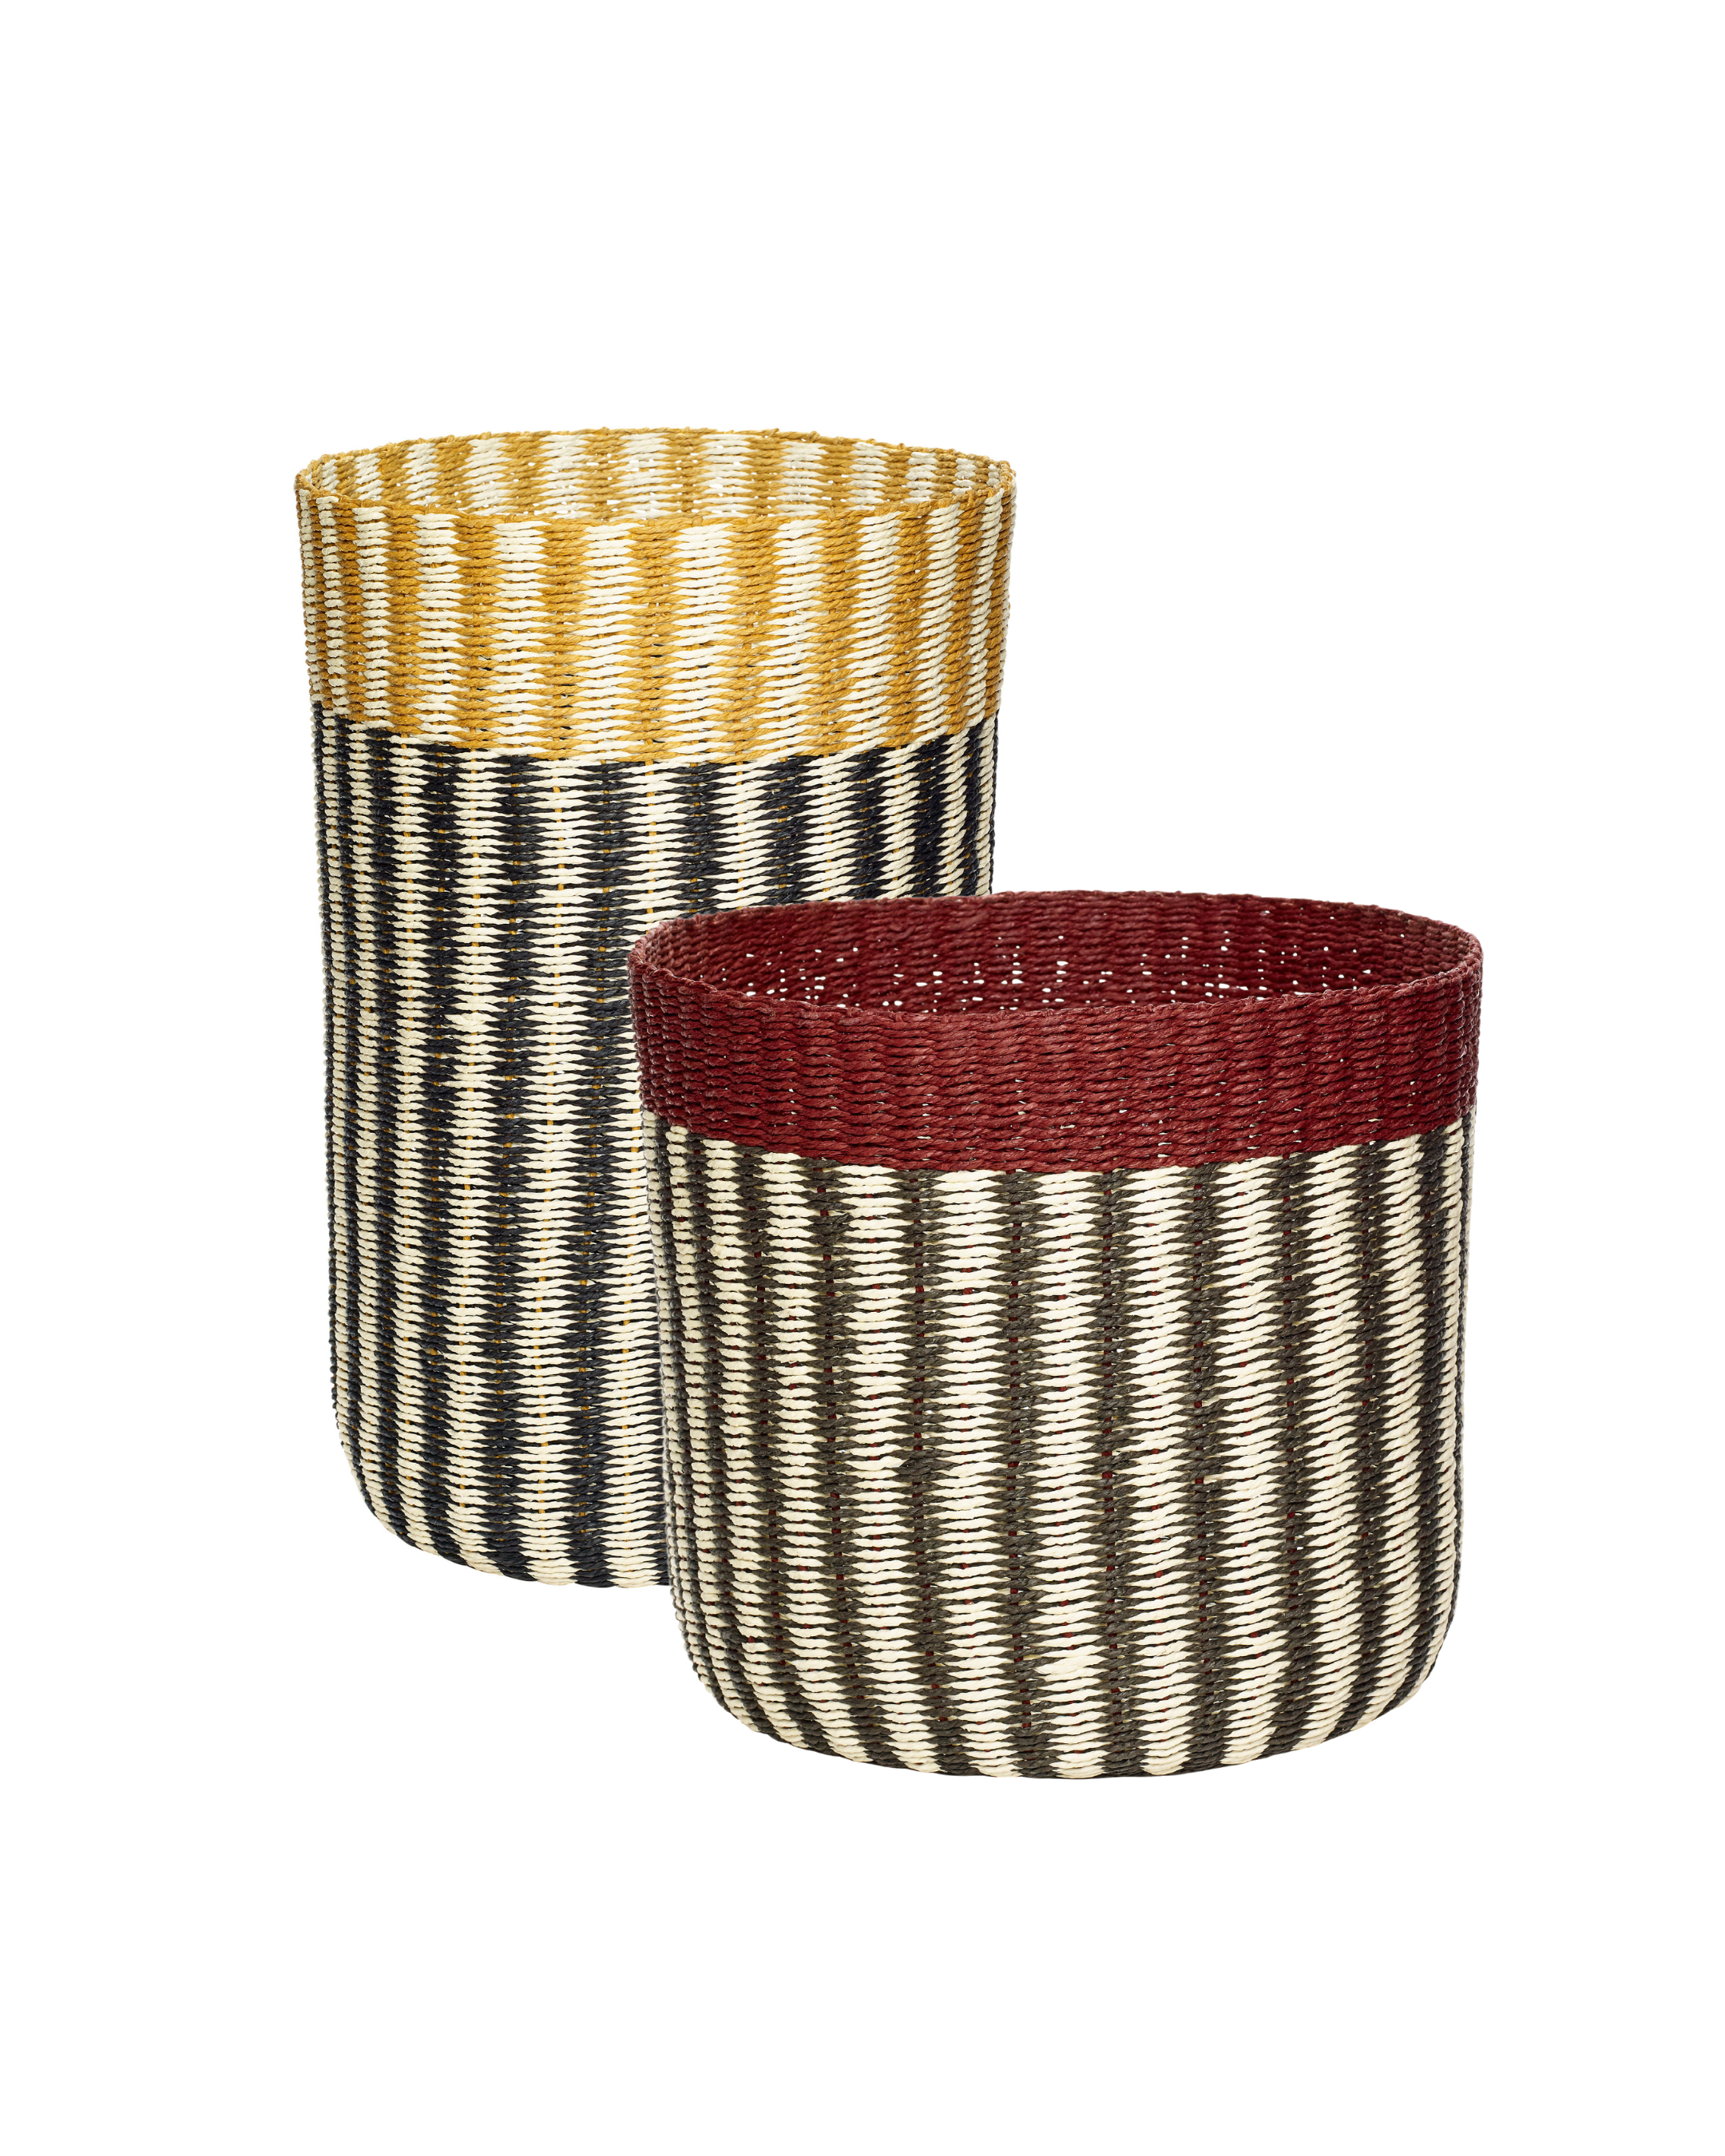 Baskets "Vertigo" multi-coloured set of 2